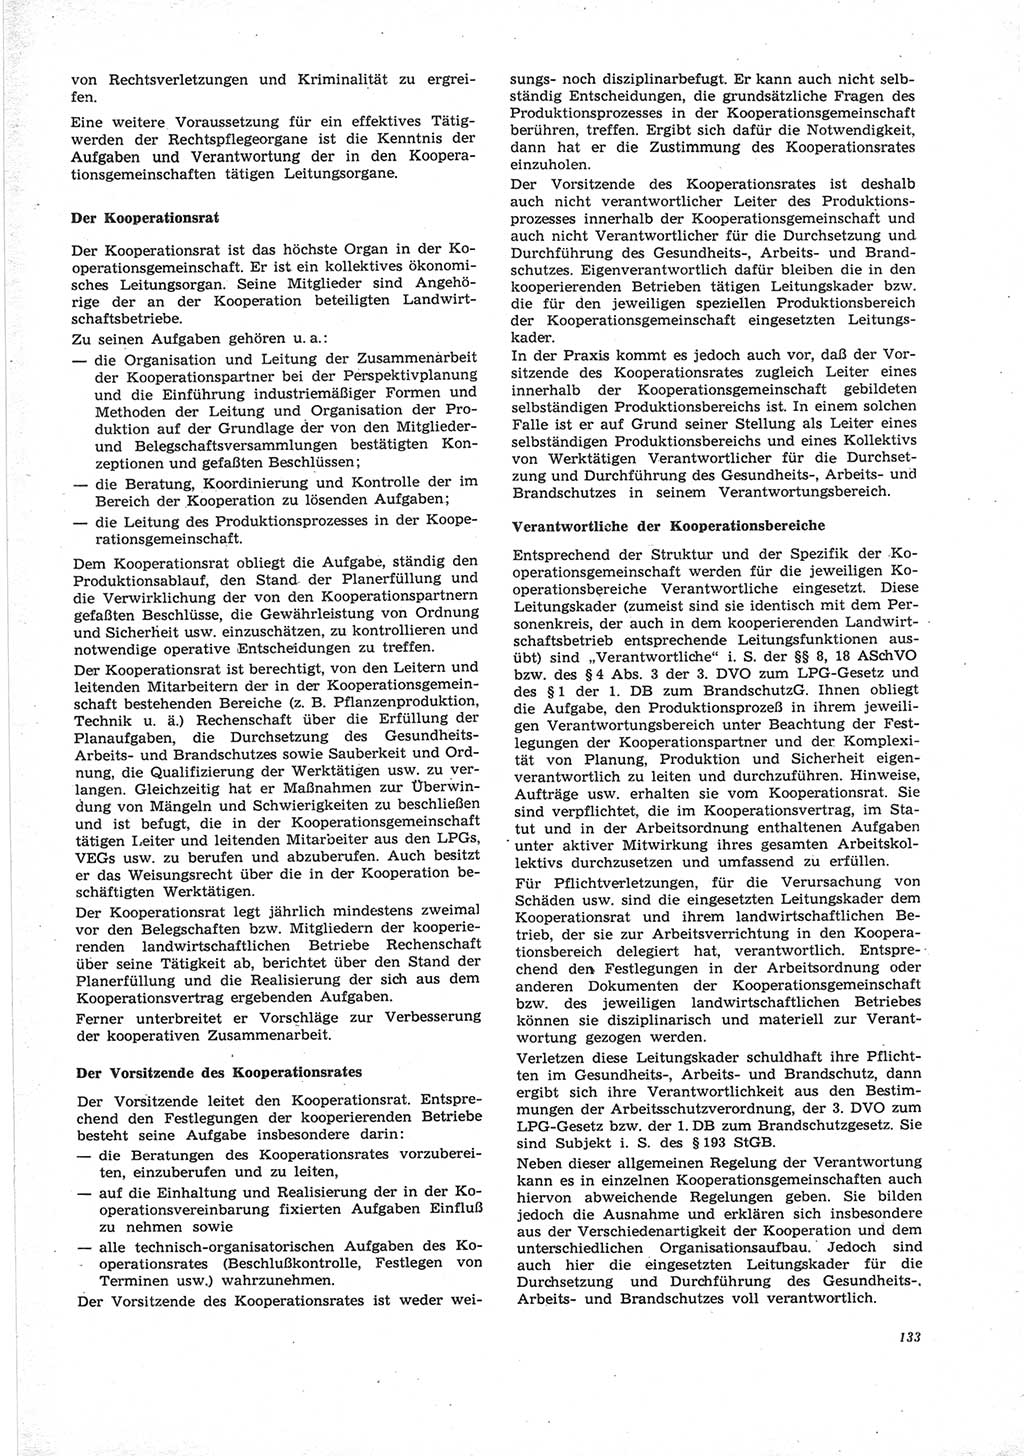 Neue Justiz (NJ), Zeitschrift für Recht und Rechtswissenschaft [Deutsche Demokratische Republik (DDR)], 25. Jahrgang 1971, Seite 133 (NJ DDR 1971, S. 133)